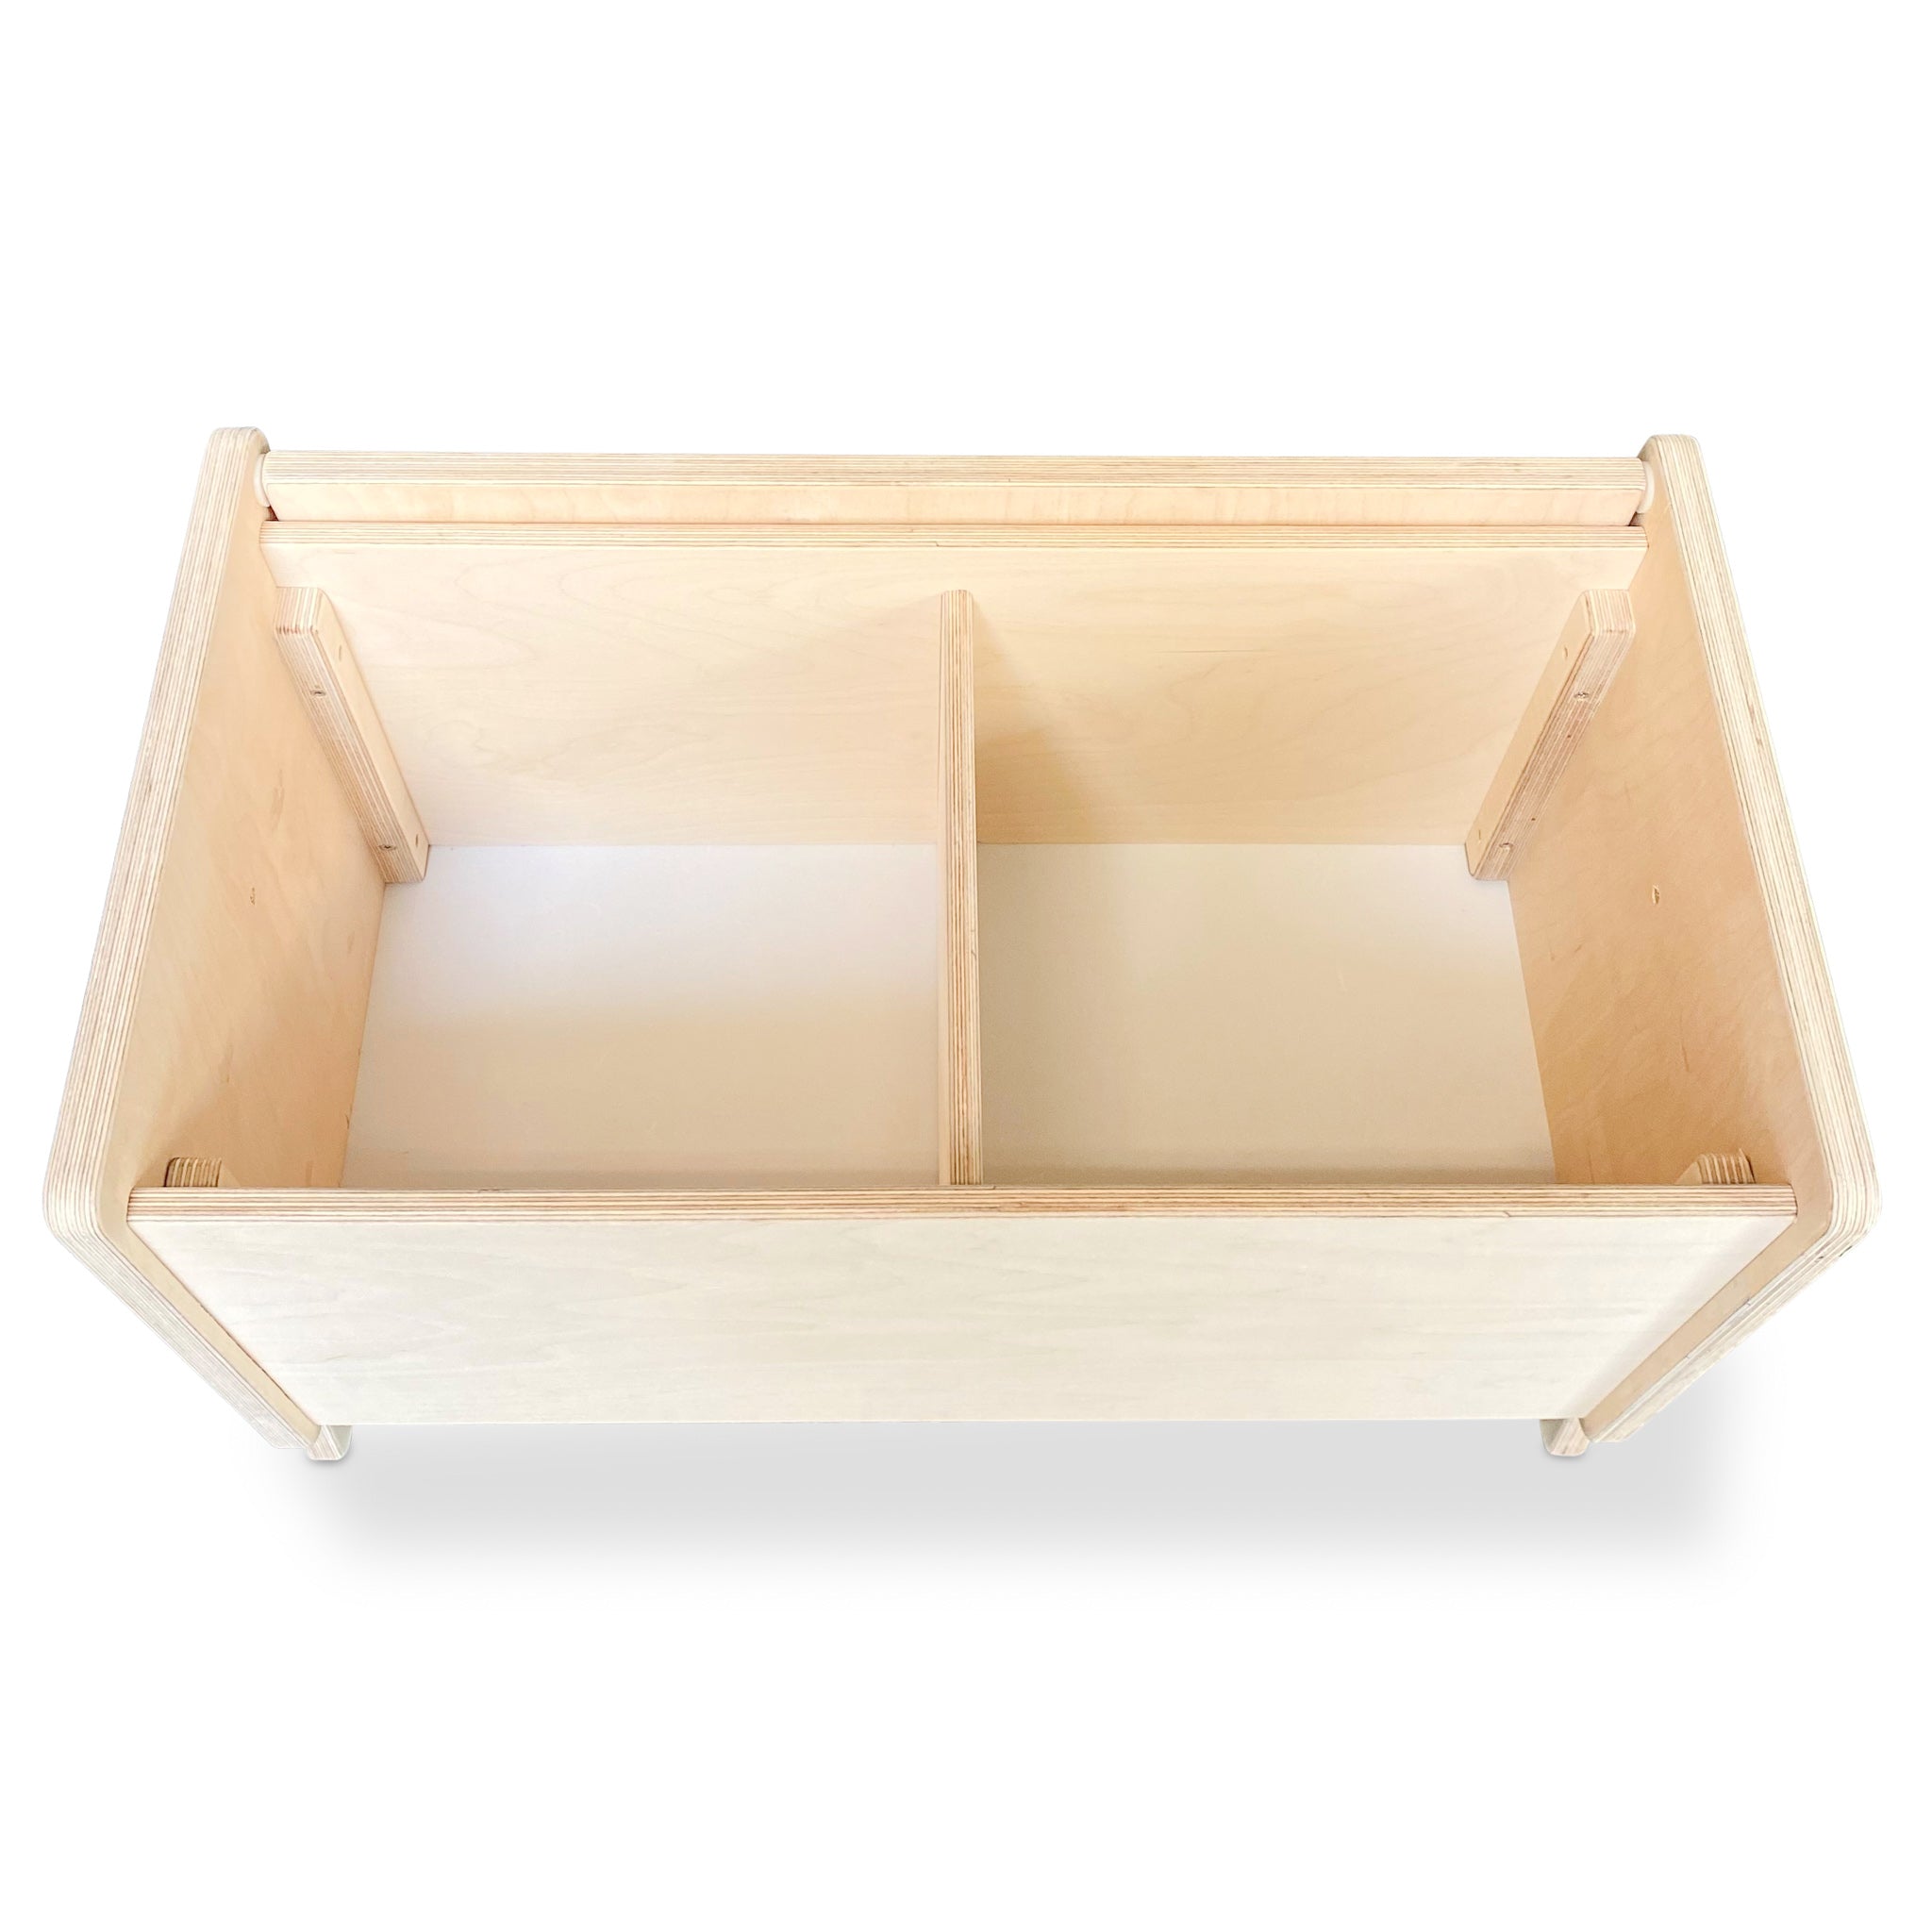 Caixa de armazenamento de madeira/estante com aba